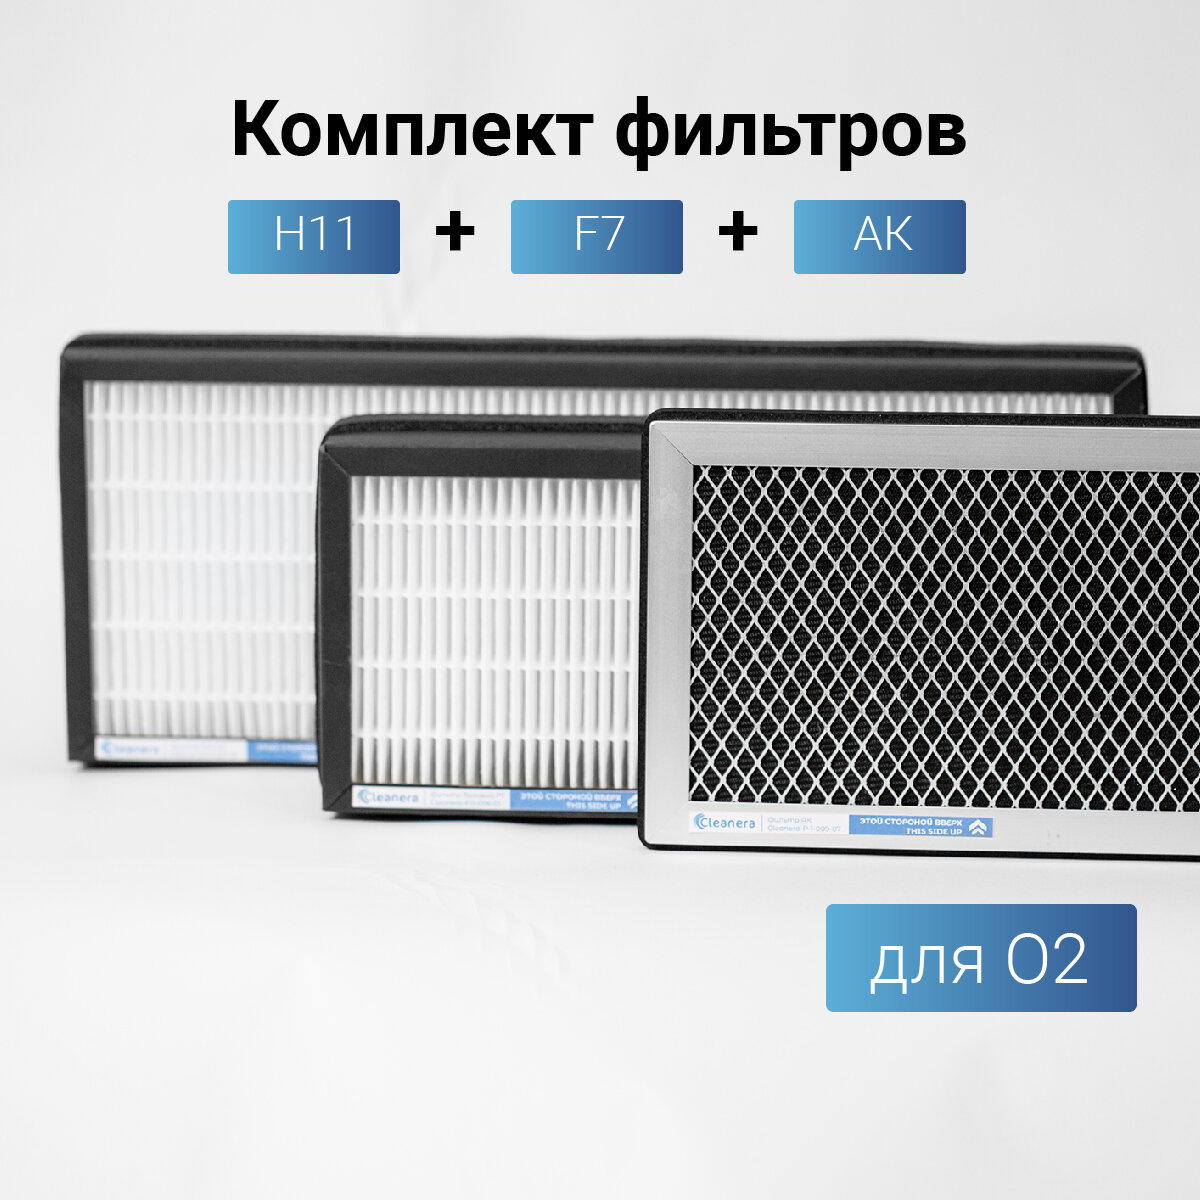 Комплект Фильтров для климатической установки O2 / О2 / 02 ( F7 E11 AK)